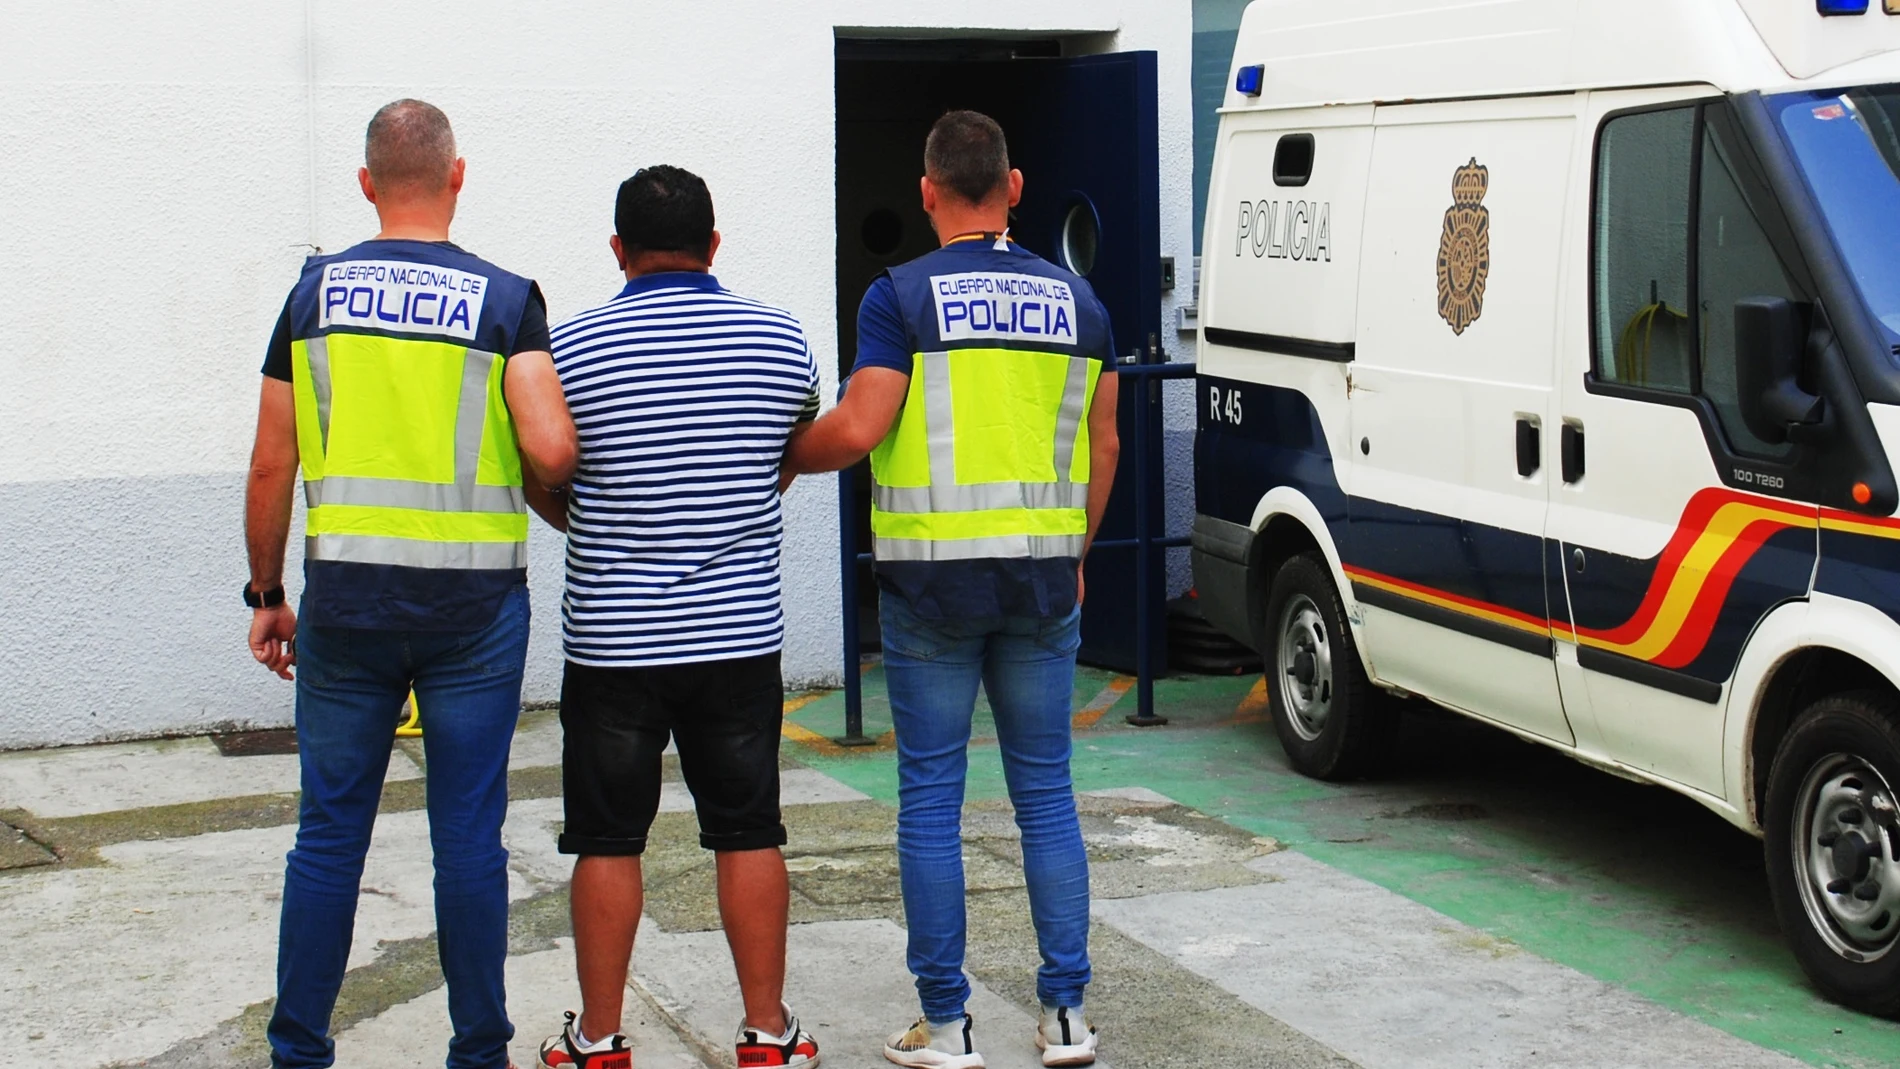 Dos agentes trasladan al hombre de 44 años detenido en Loiu (Vizcaya) condenado en El Salvador a 5 años por pertenencia a organización criminal